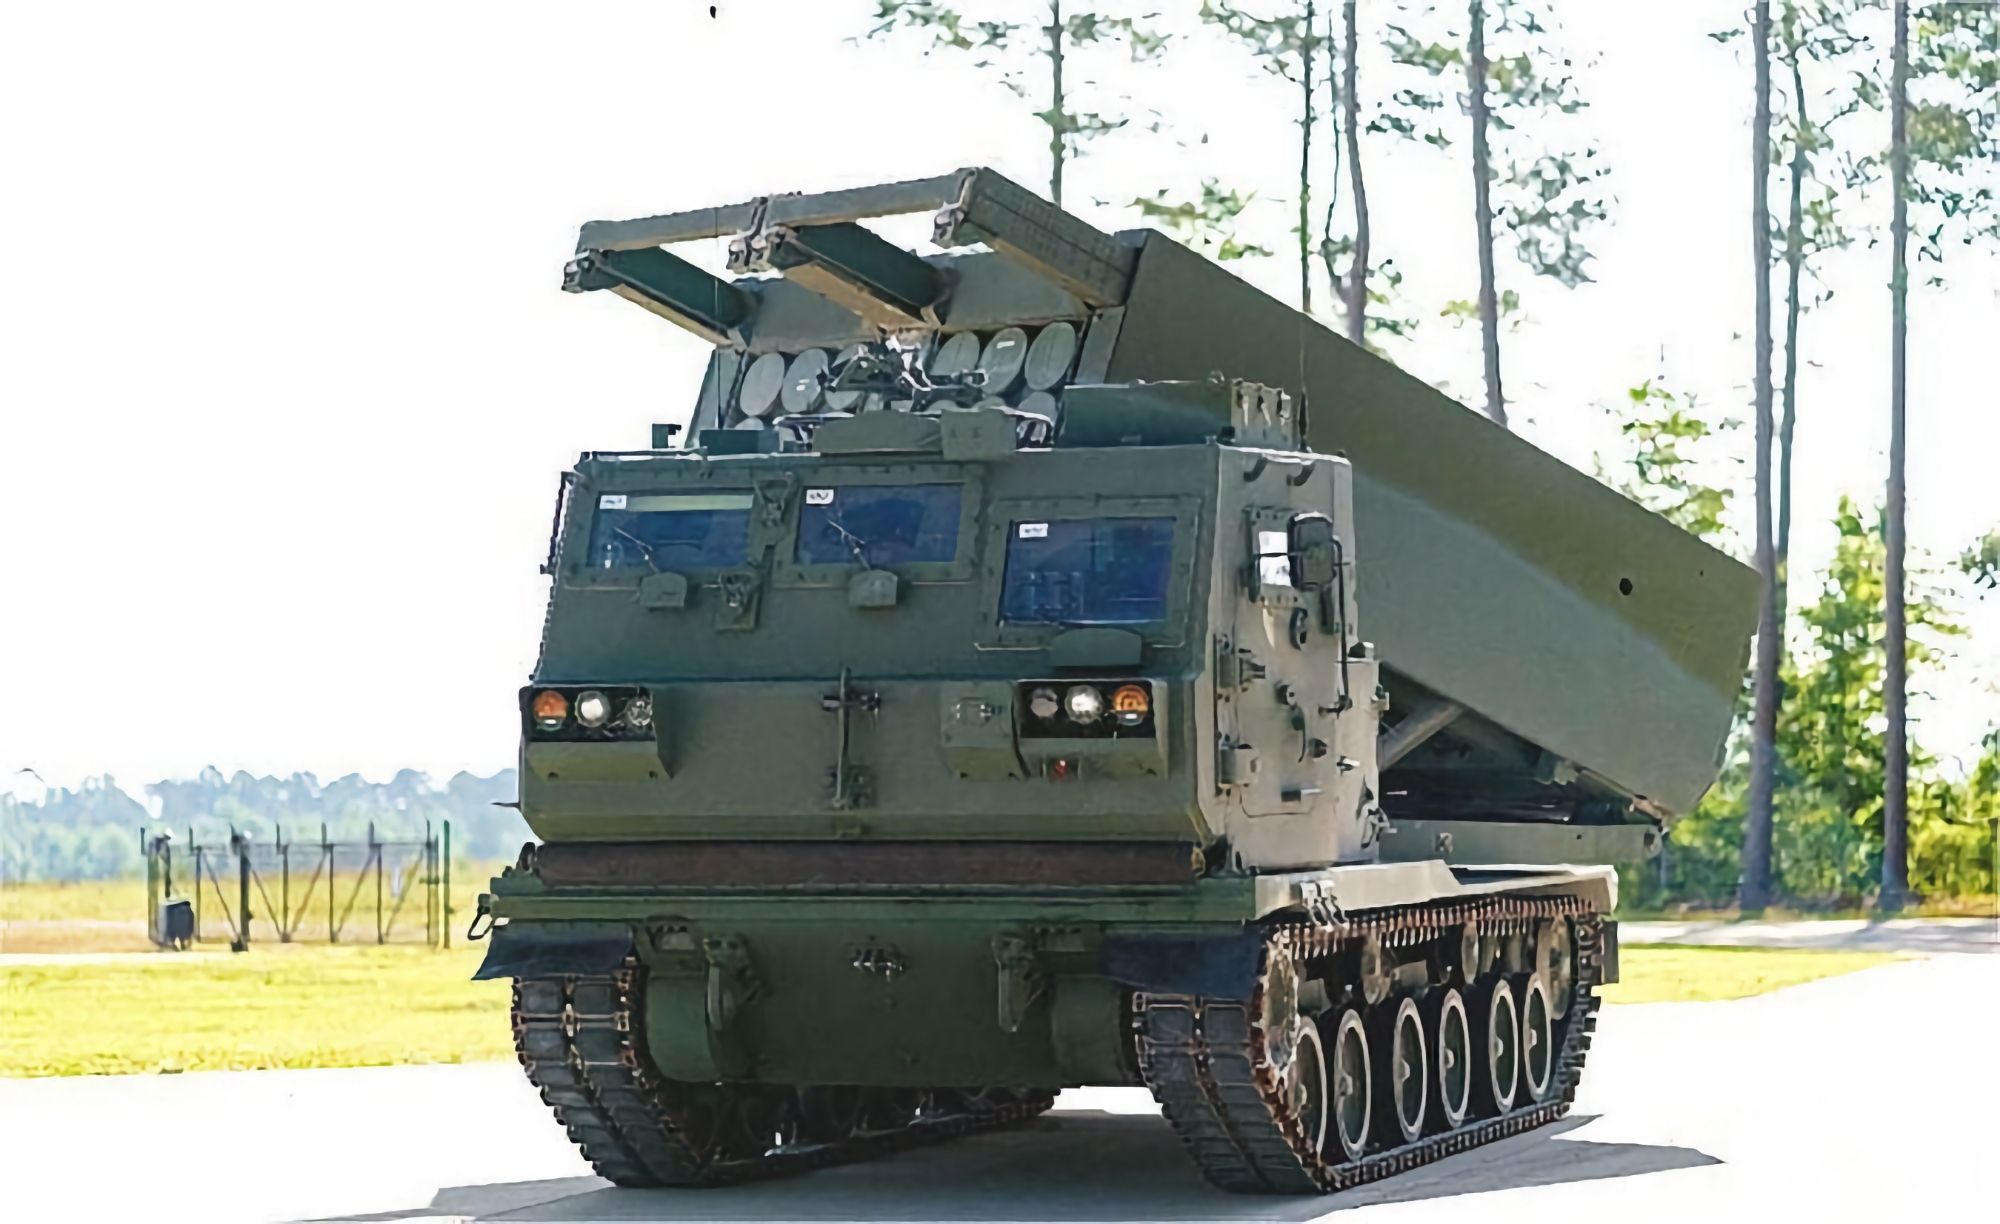 De VS heeft Lockheed Martin opdracht gegeven om extra M270 meervoudige raketwerpers te upgraden. Deze zullen PrSM-raketten met een bereik van 500 kilometer kunnen lanceren.